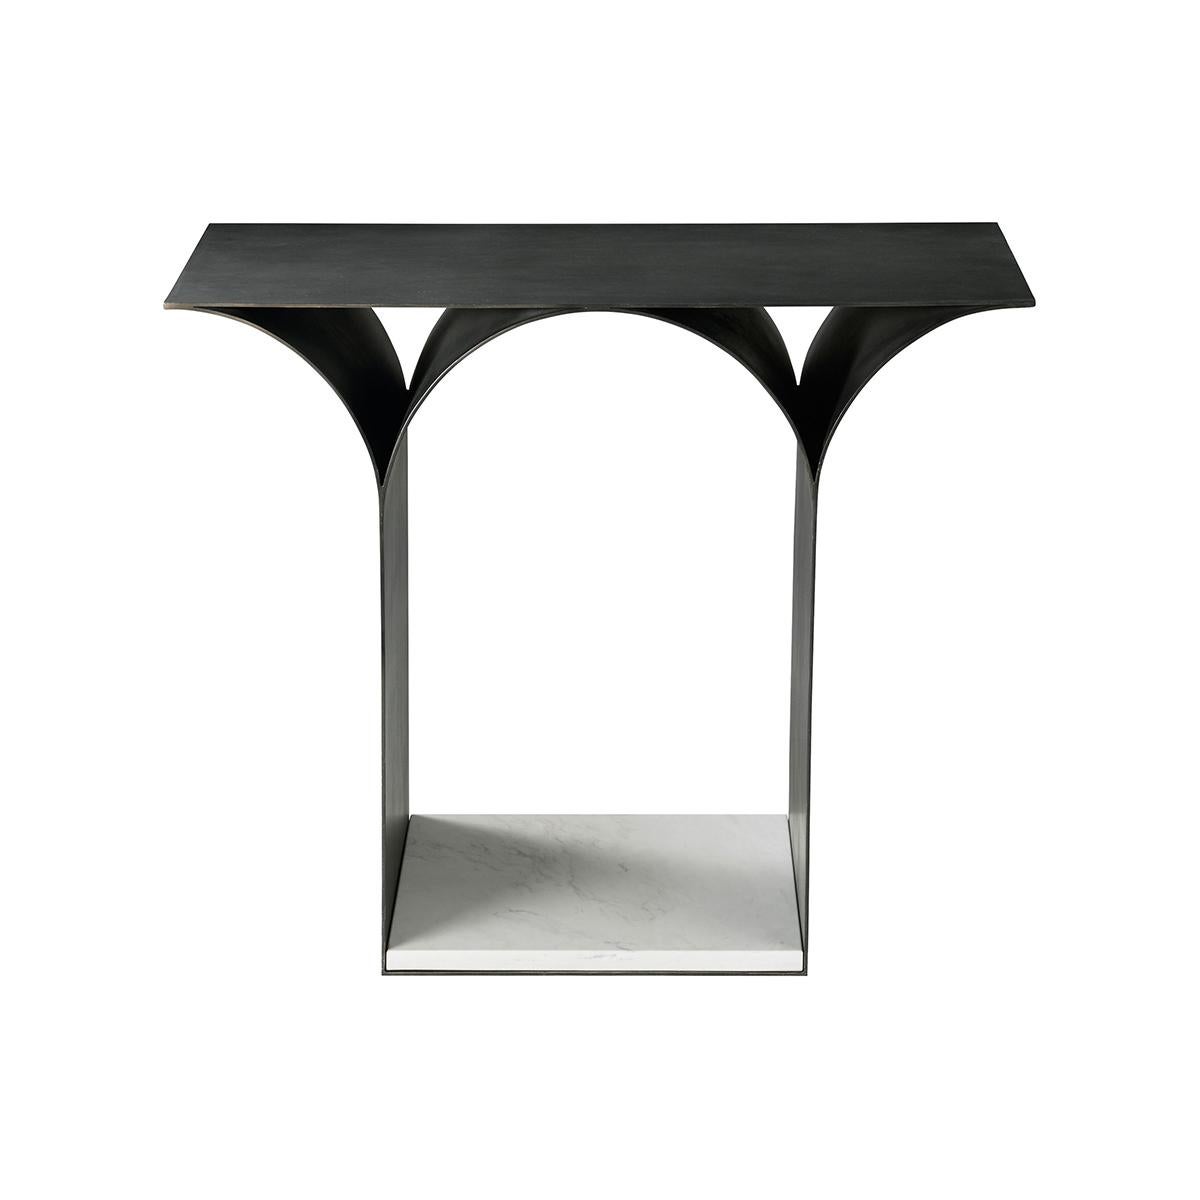 Ein ungewöhnlich eleganter Tisch Inspiriert von der skulpturalen Architektur von heute, bietet der moderne Tisch den perfekten Materialmix in einem minimalistischen Stil. Zeitgenössischer Stahl in dunkler Ausführung, der perfekt mit dem Marmorsockel